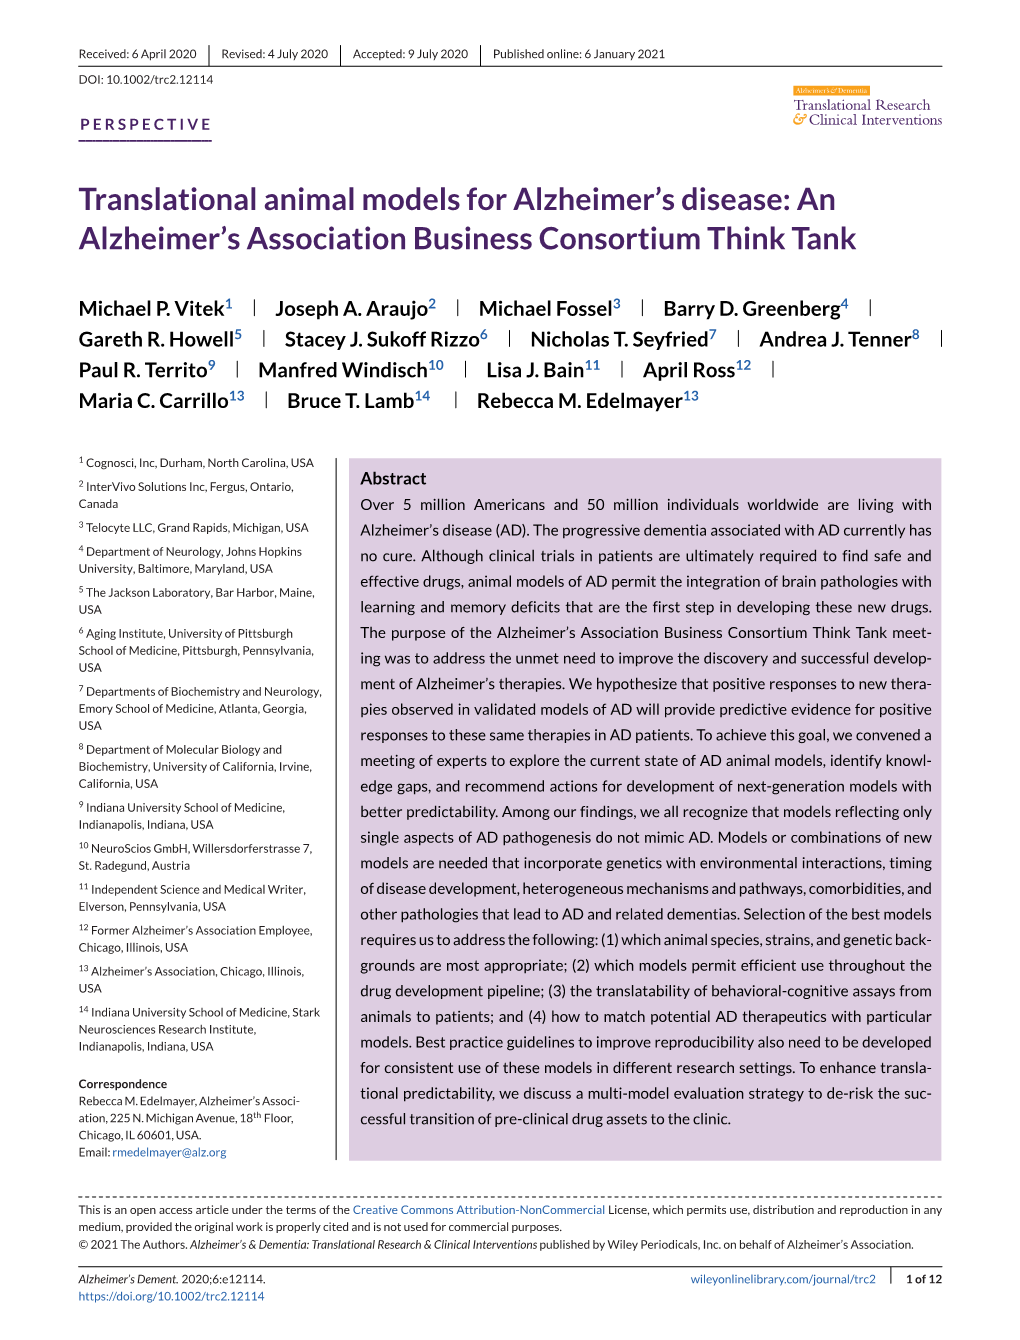 Translational Animal Models for Alzheimer's Disease